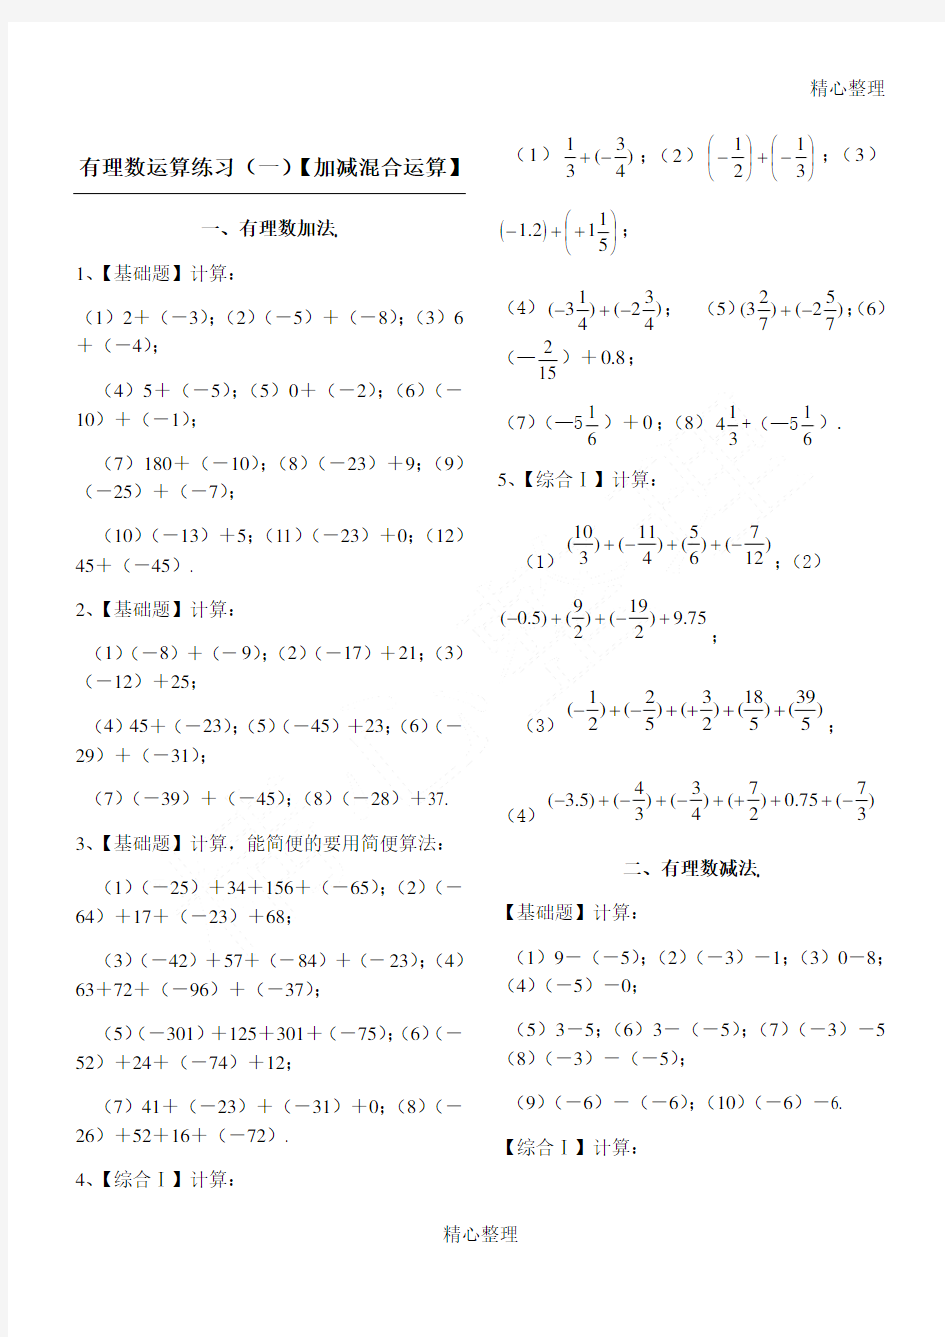 A4版有理数加减混合计算题100道【含答案】(七年级数学)